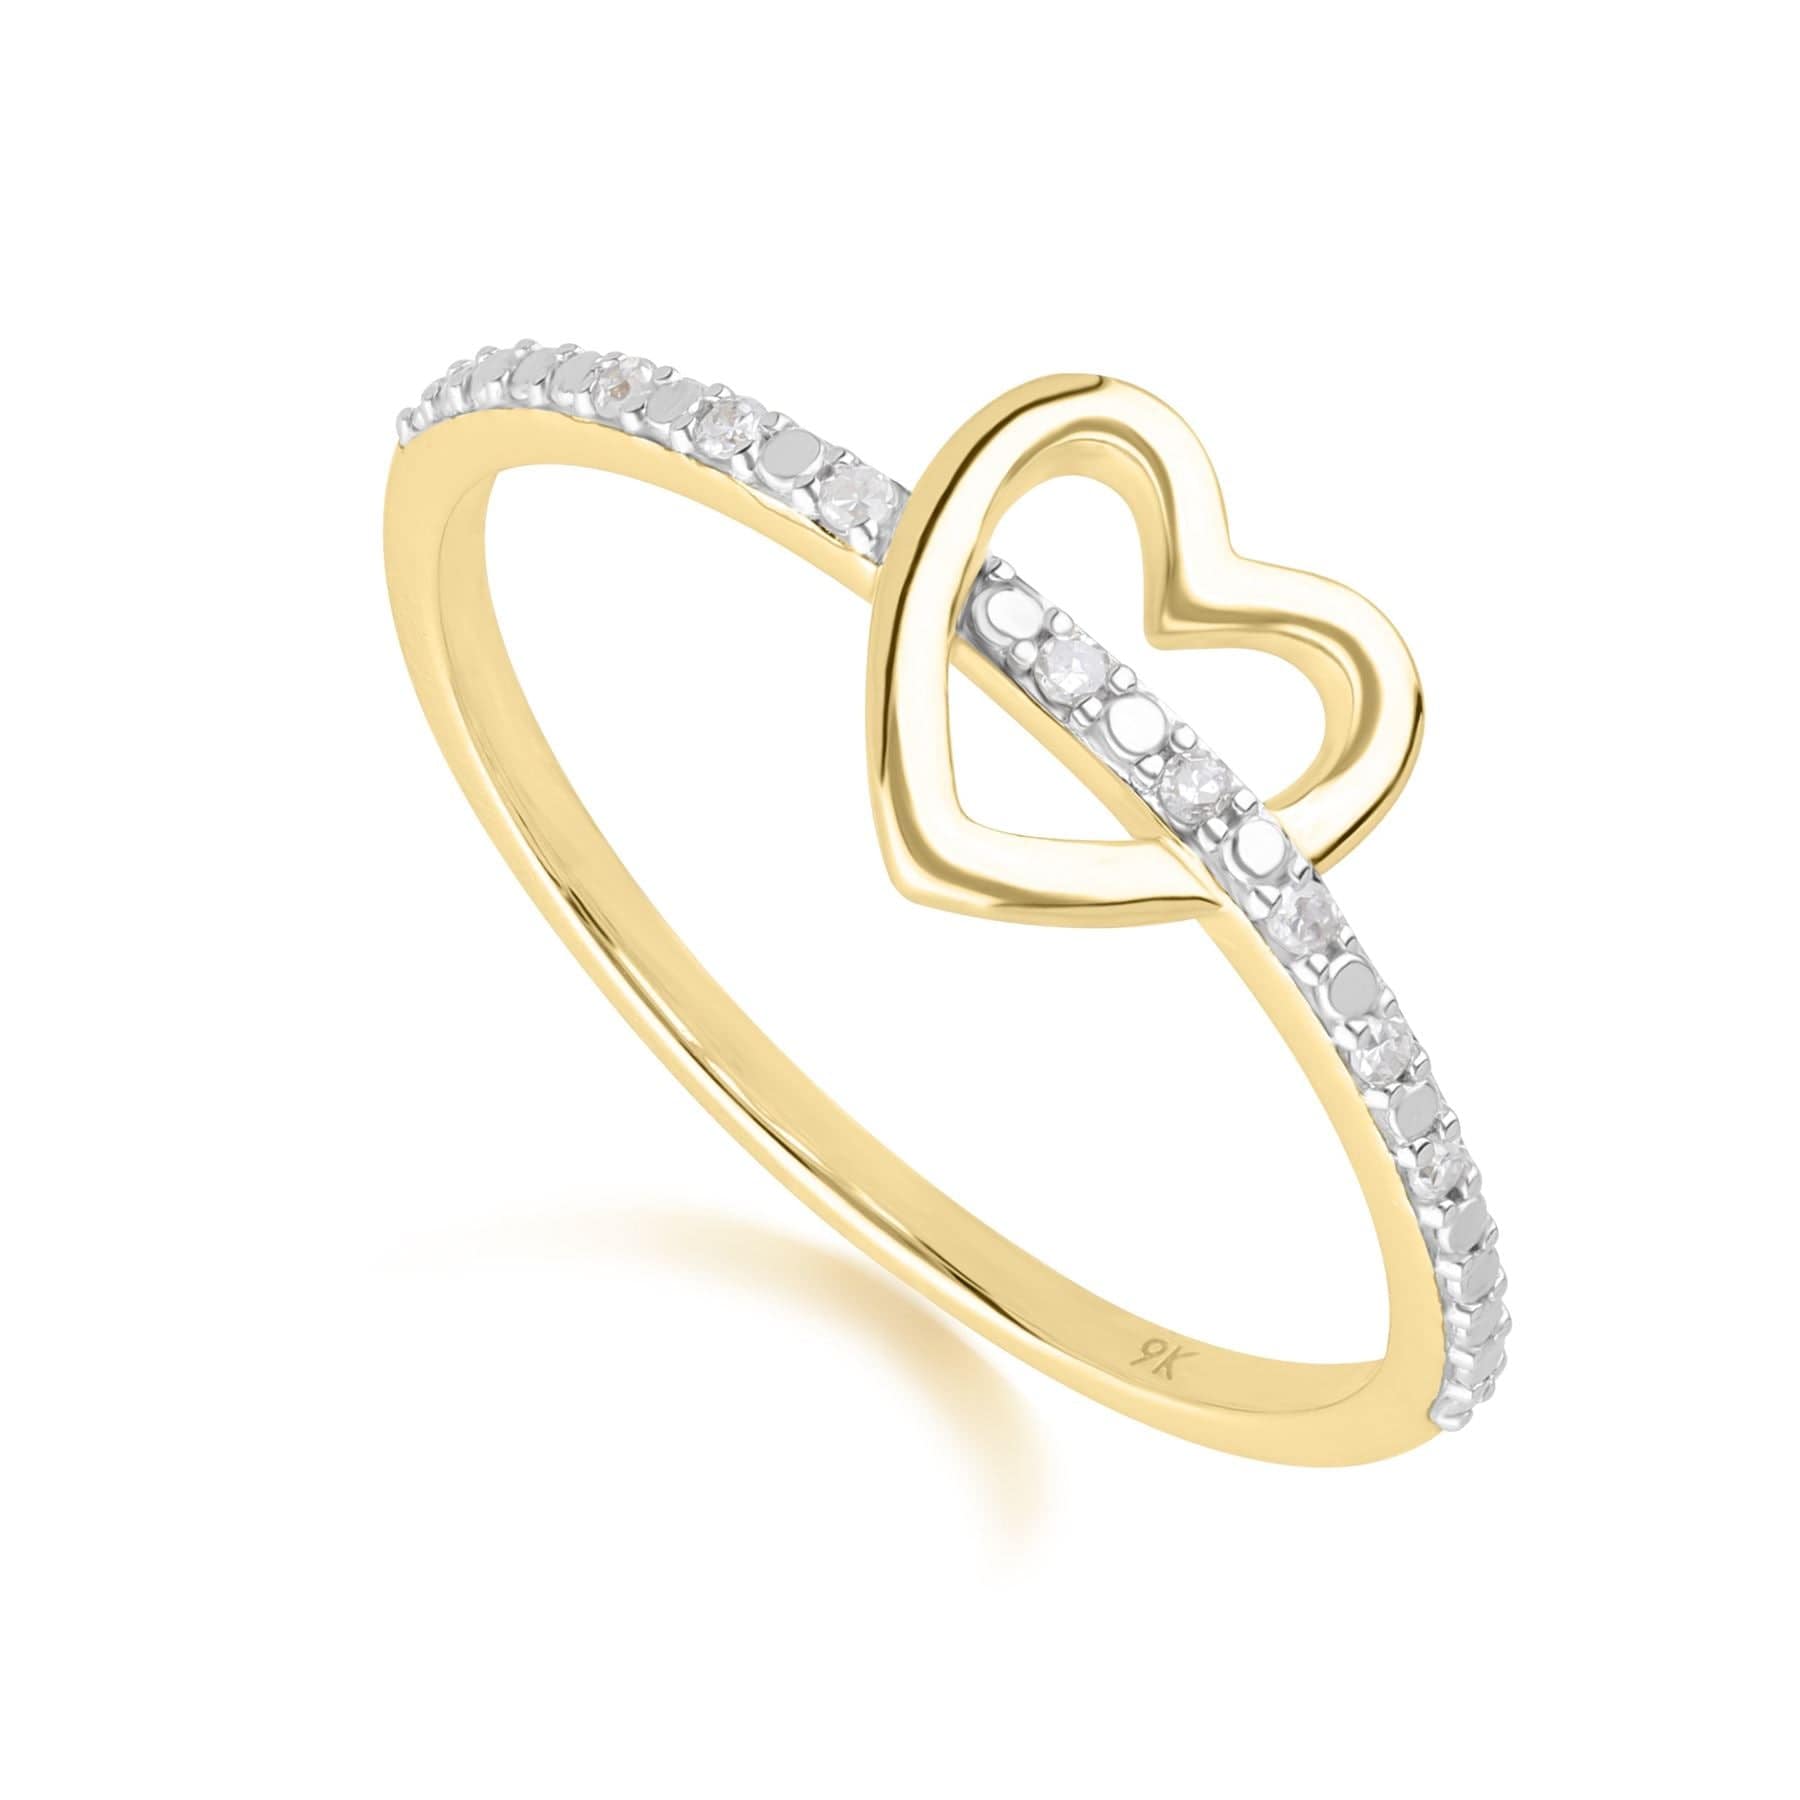 Love Heart Diamond Band Ring in 9ct Yellow Gold - Gemondo